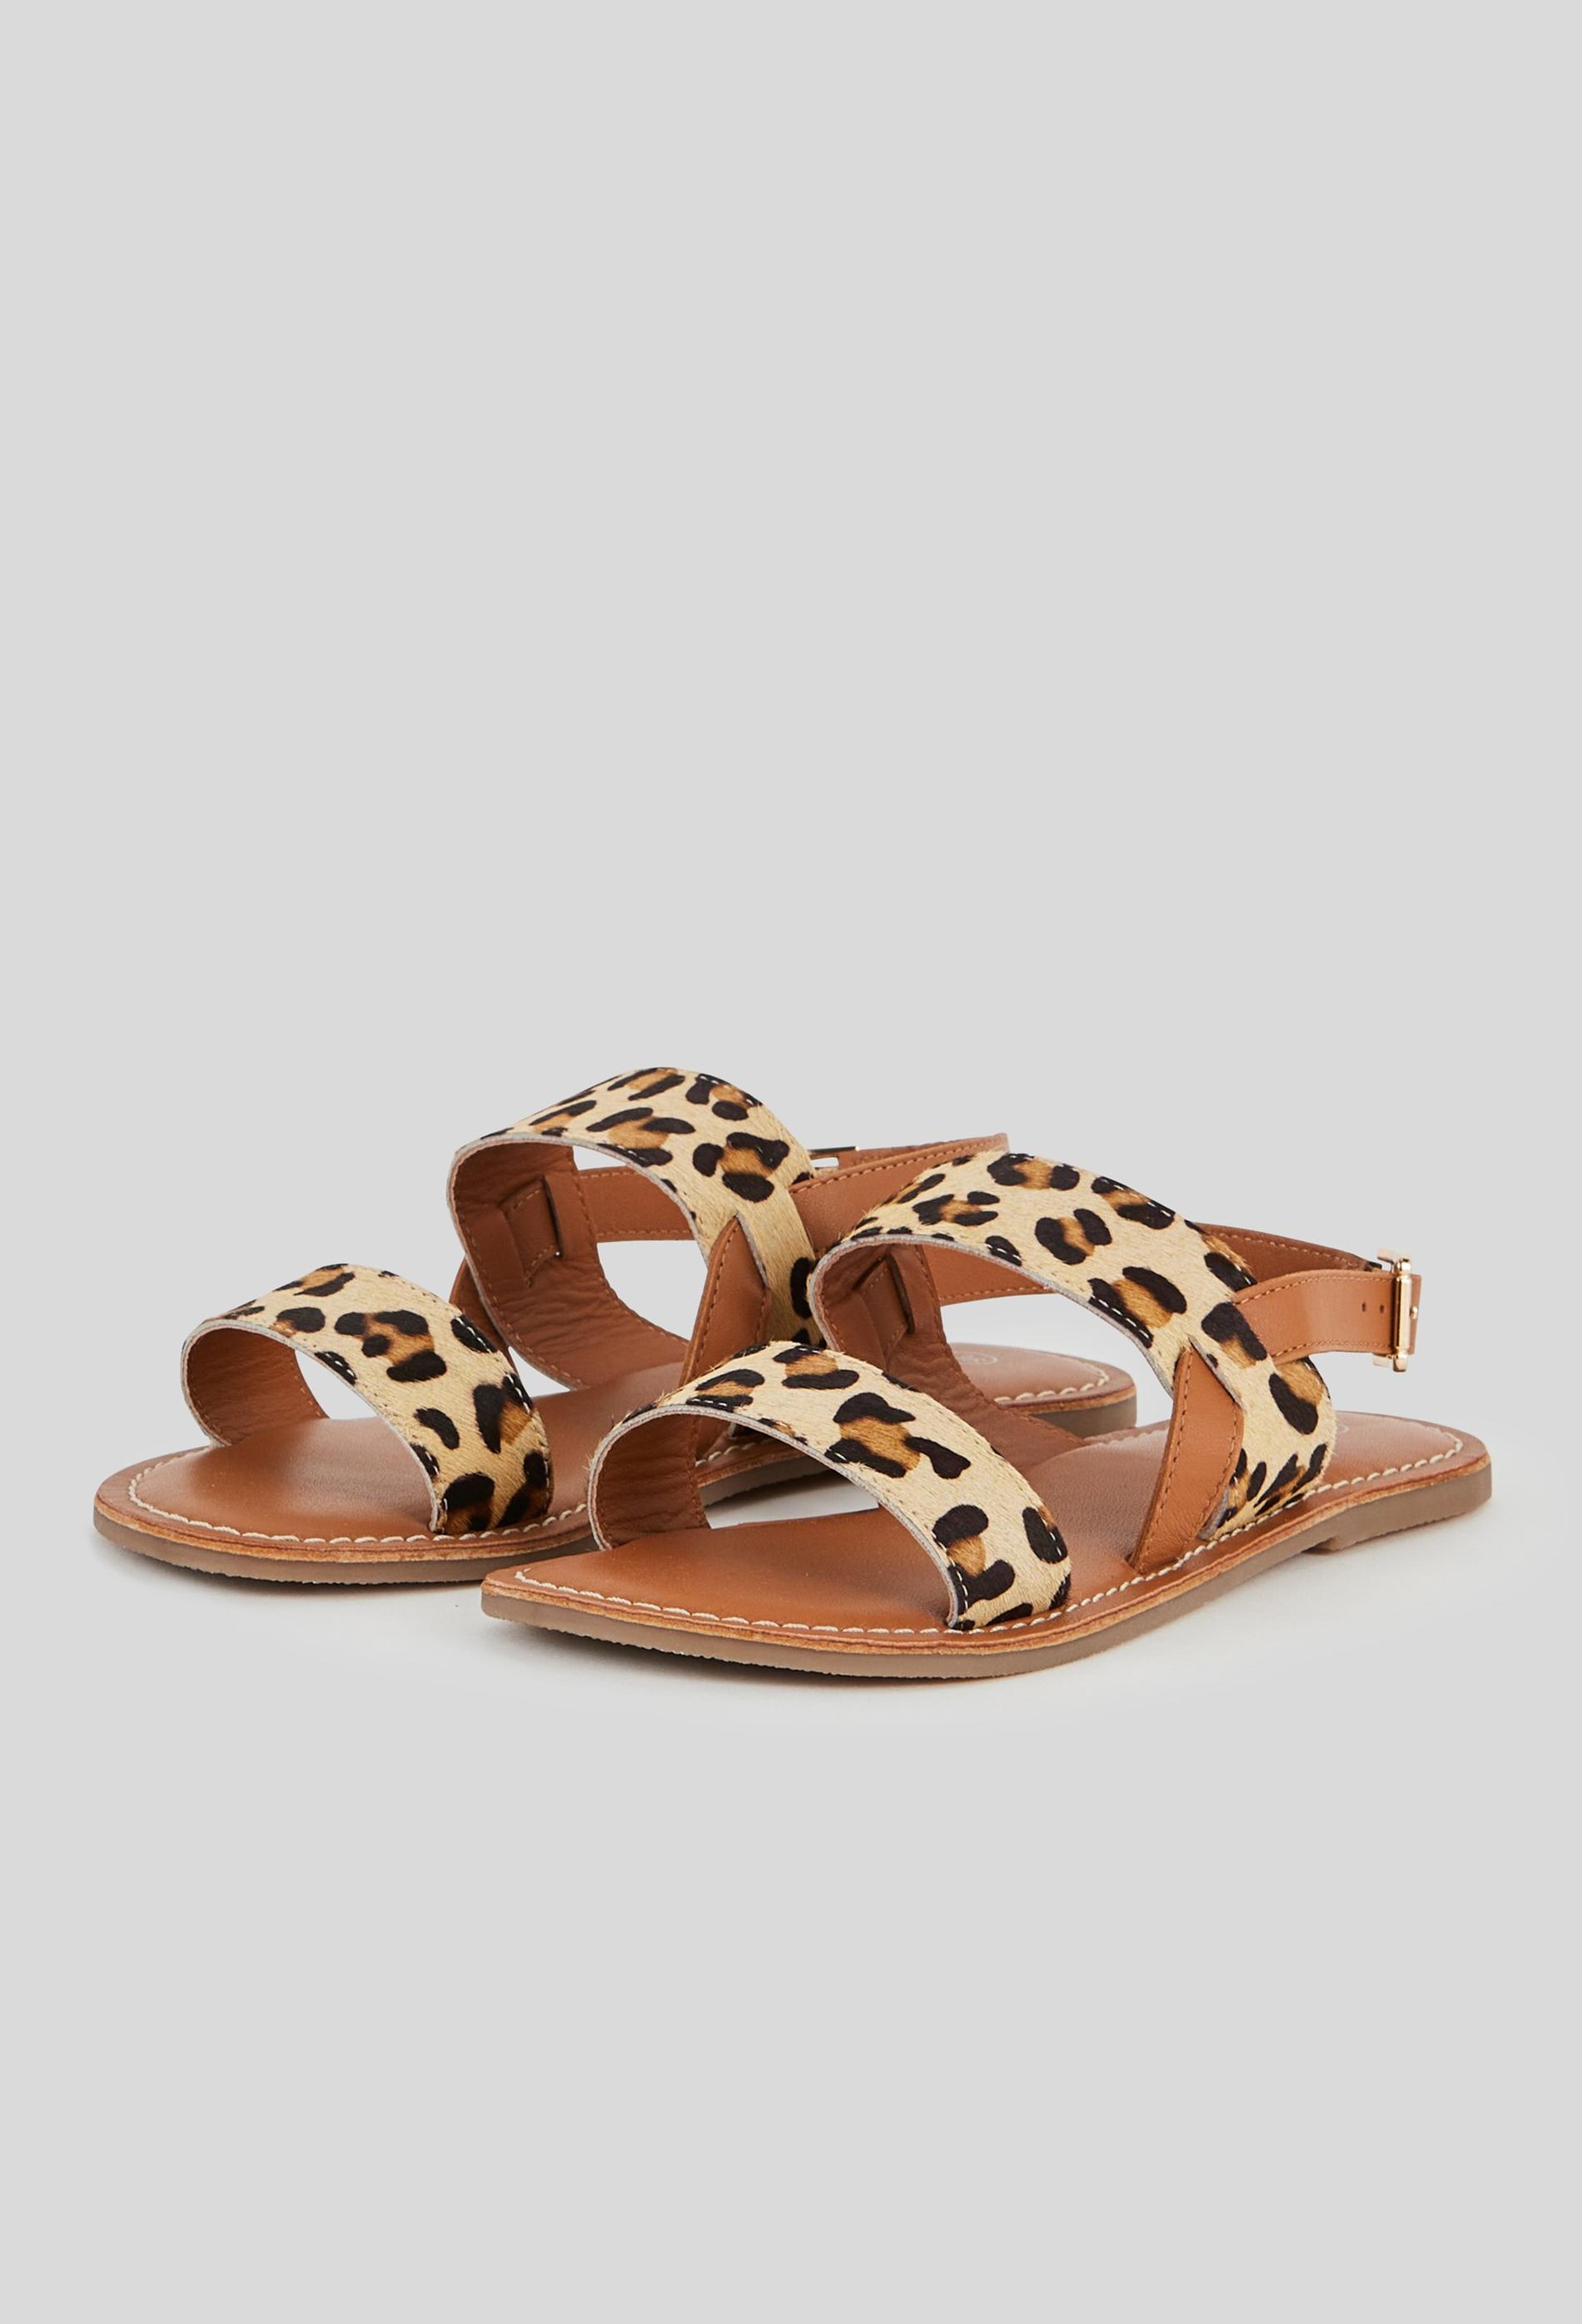 Sandales cuir léopard 36 brun clair